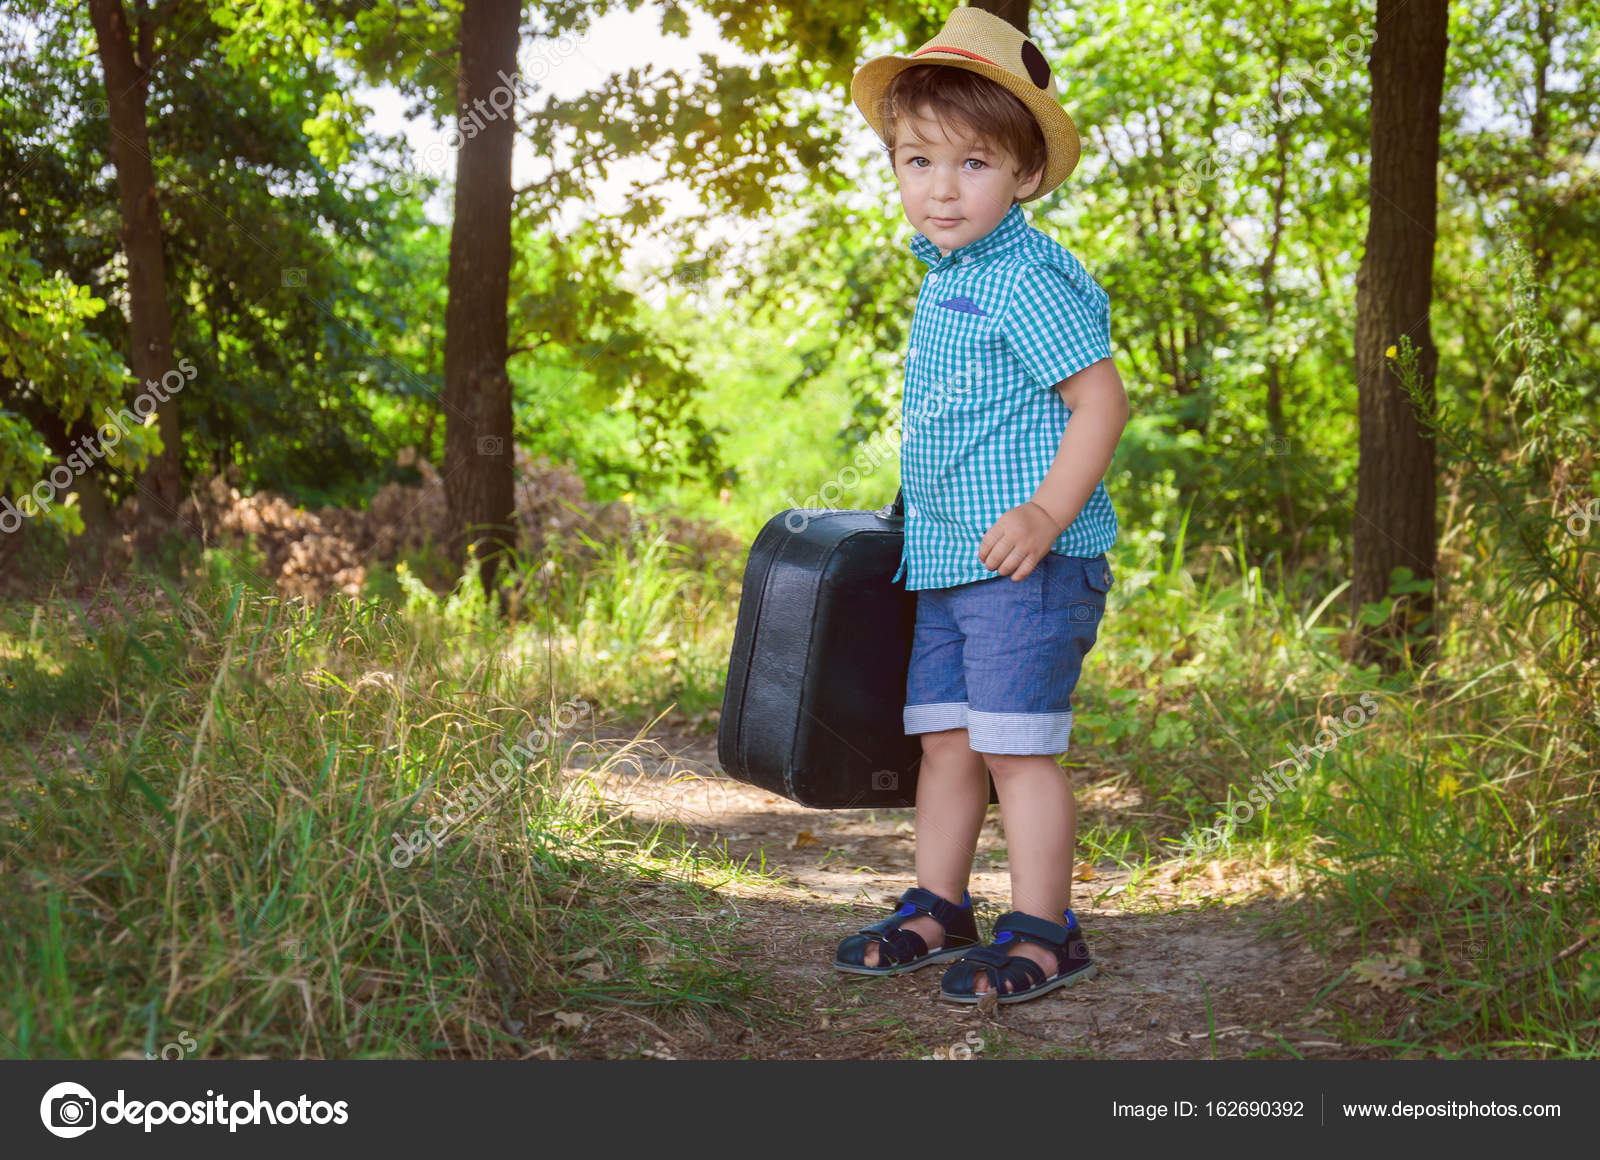 solide Wiens Dakloos Kleine jongen in een plaid shirt en een stro hoed draagt een koffer ik ⬇  Stockfoto, rechtenvrije foto door © Dudaeva #162690392